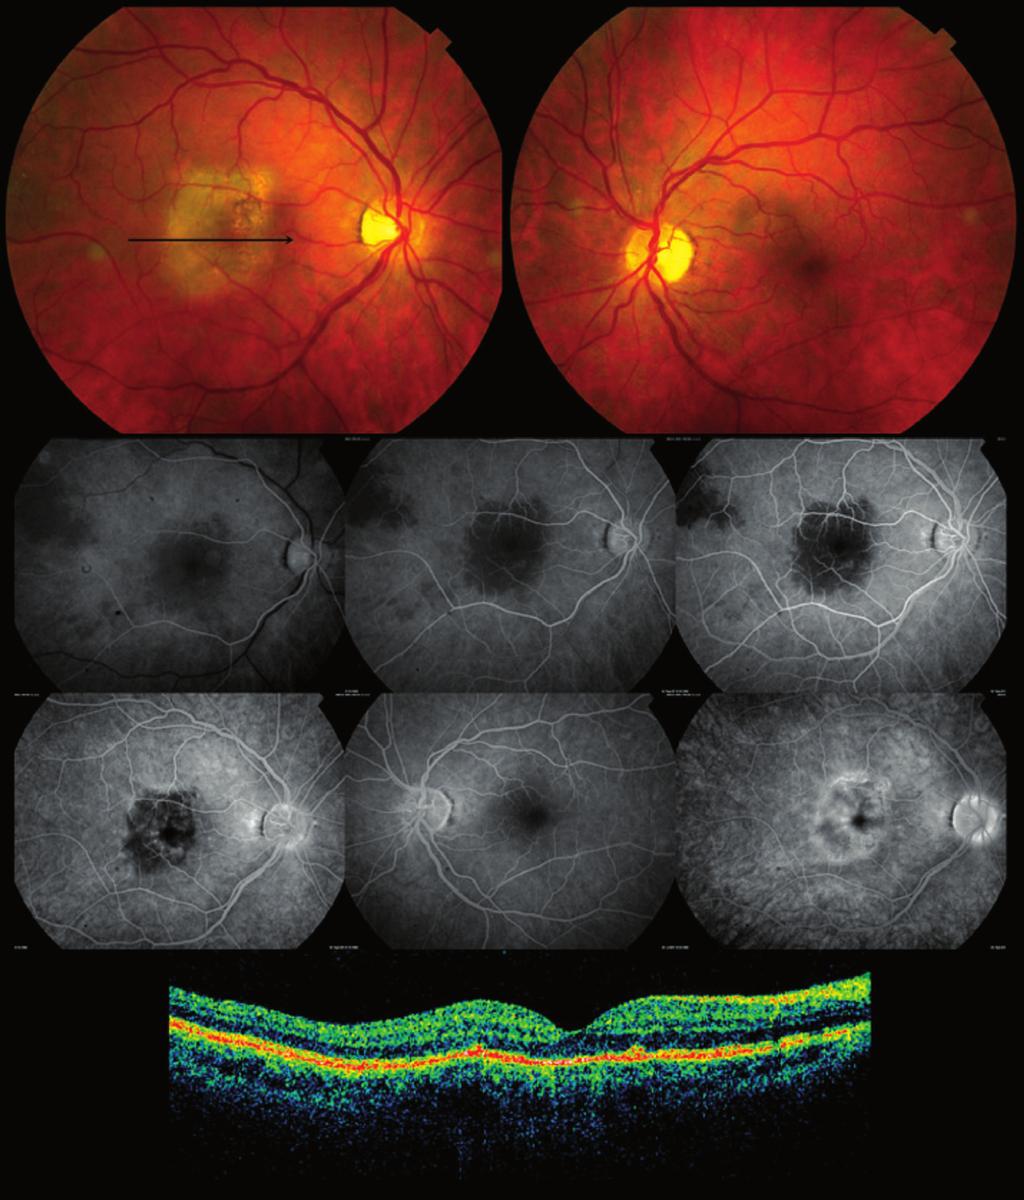 Coroidite serpiginosa macular: relato de caso 725 A B C D E F G H I Figura 1 - Aspecto da lesão ativa de coroidite serpiginosa macular do olho direito observada pela retinografia (A), angiografia